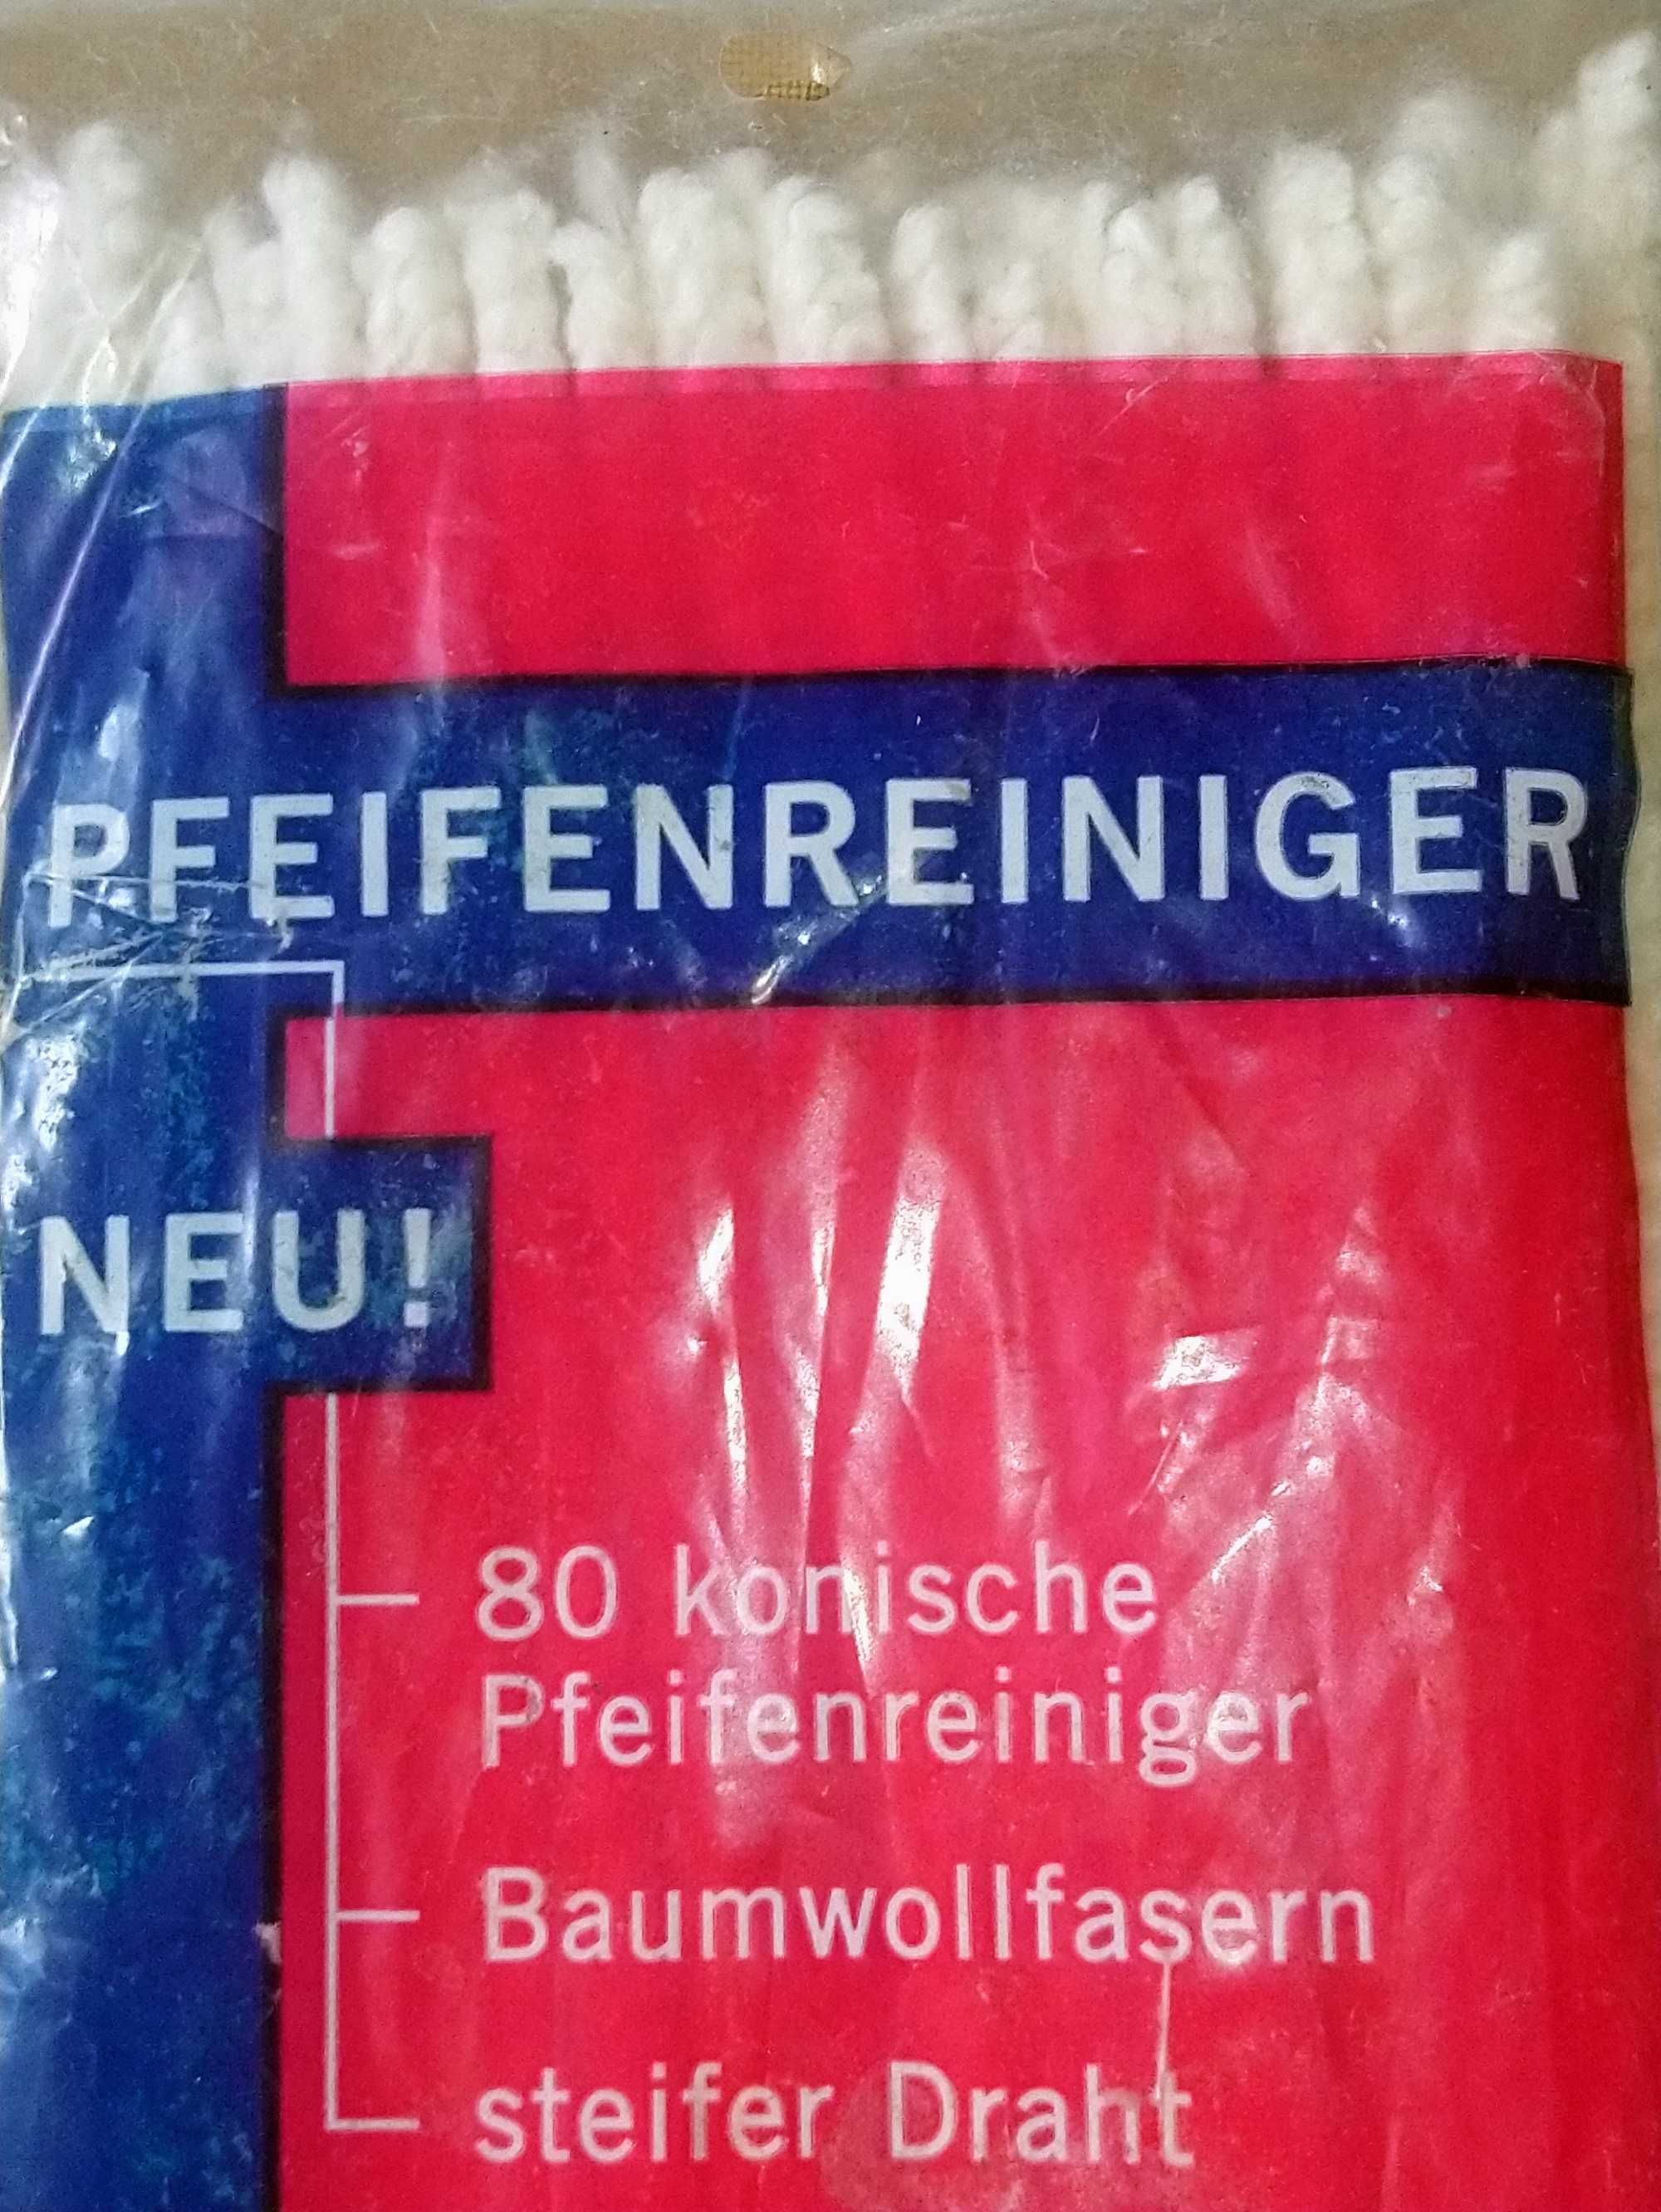 Йоршики для чищення курильних трубок 70 шт.Германия